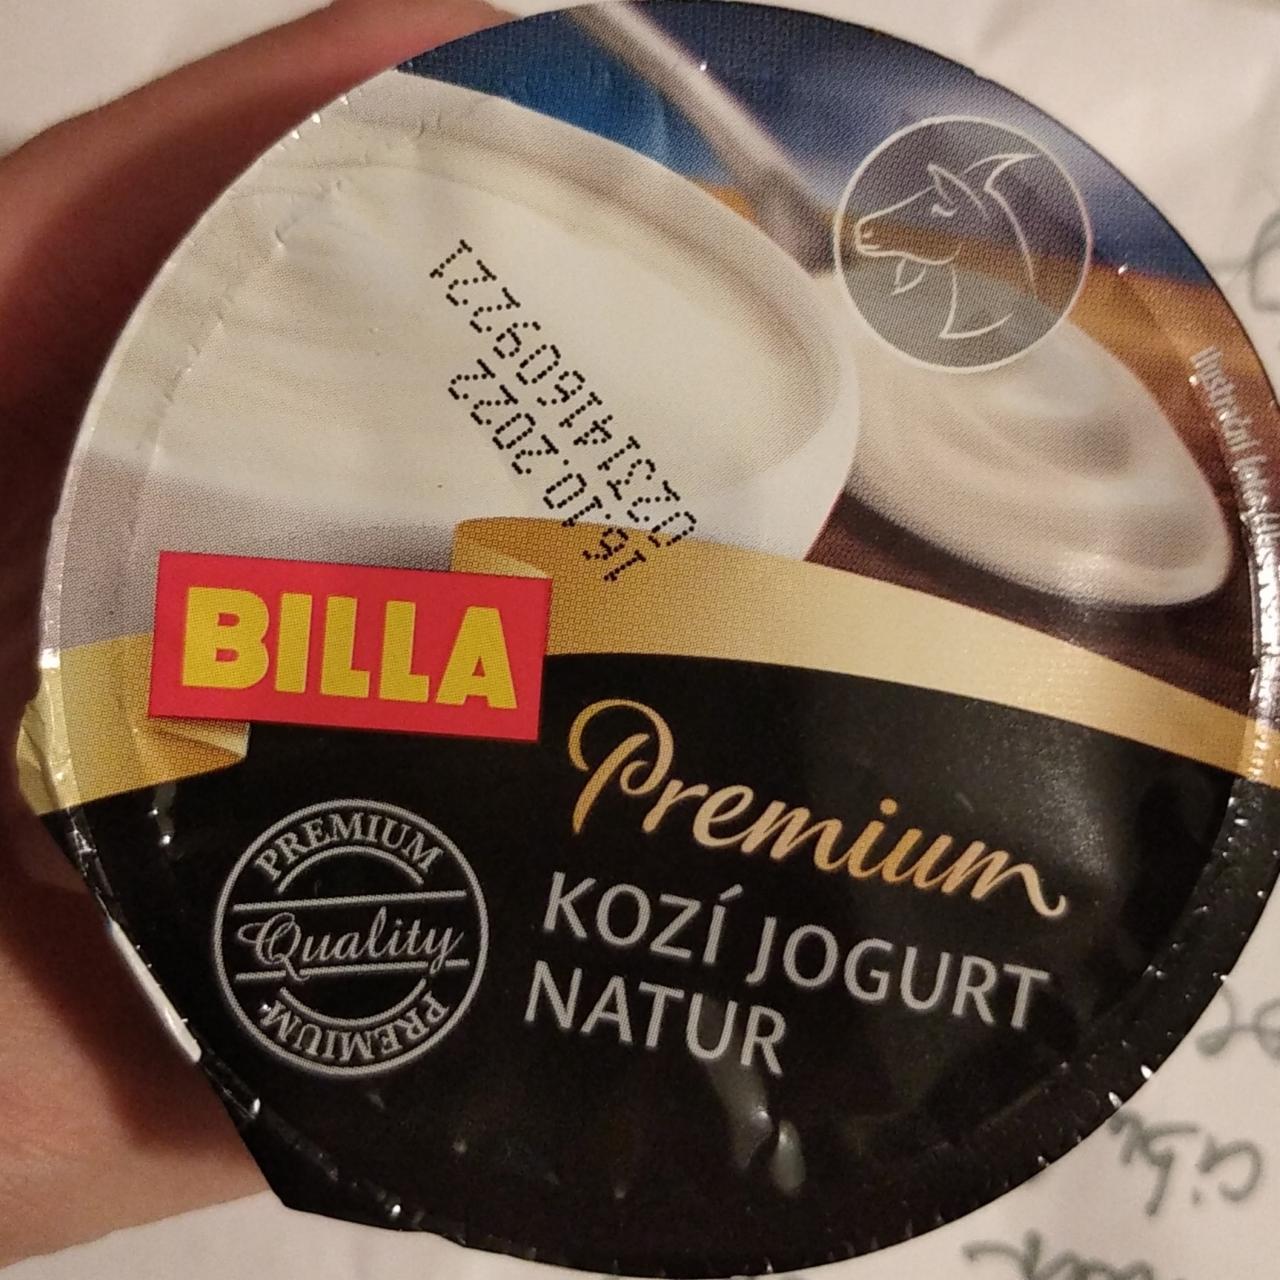 Fotografie - Premium kozí jogurt natur Billa